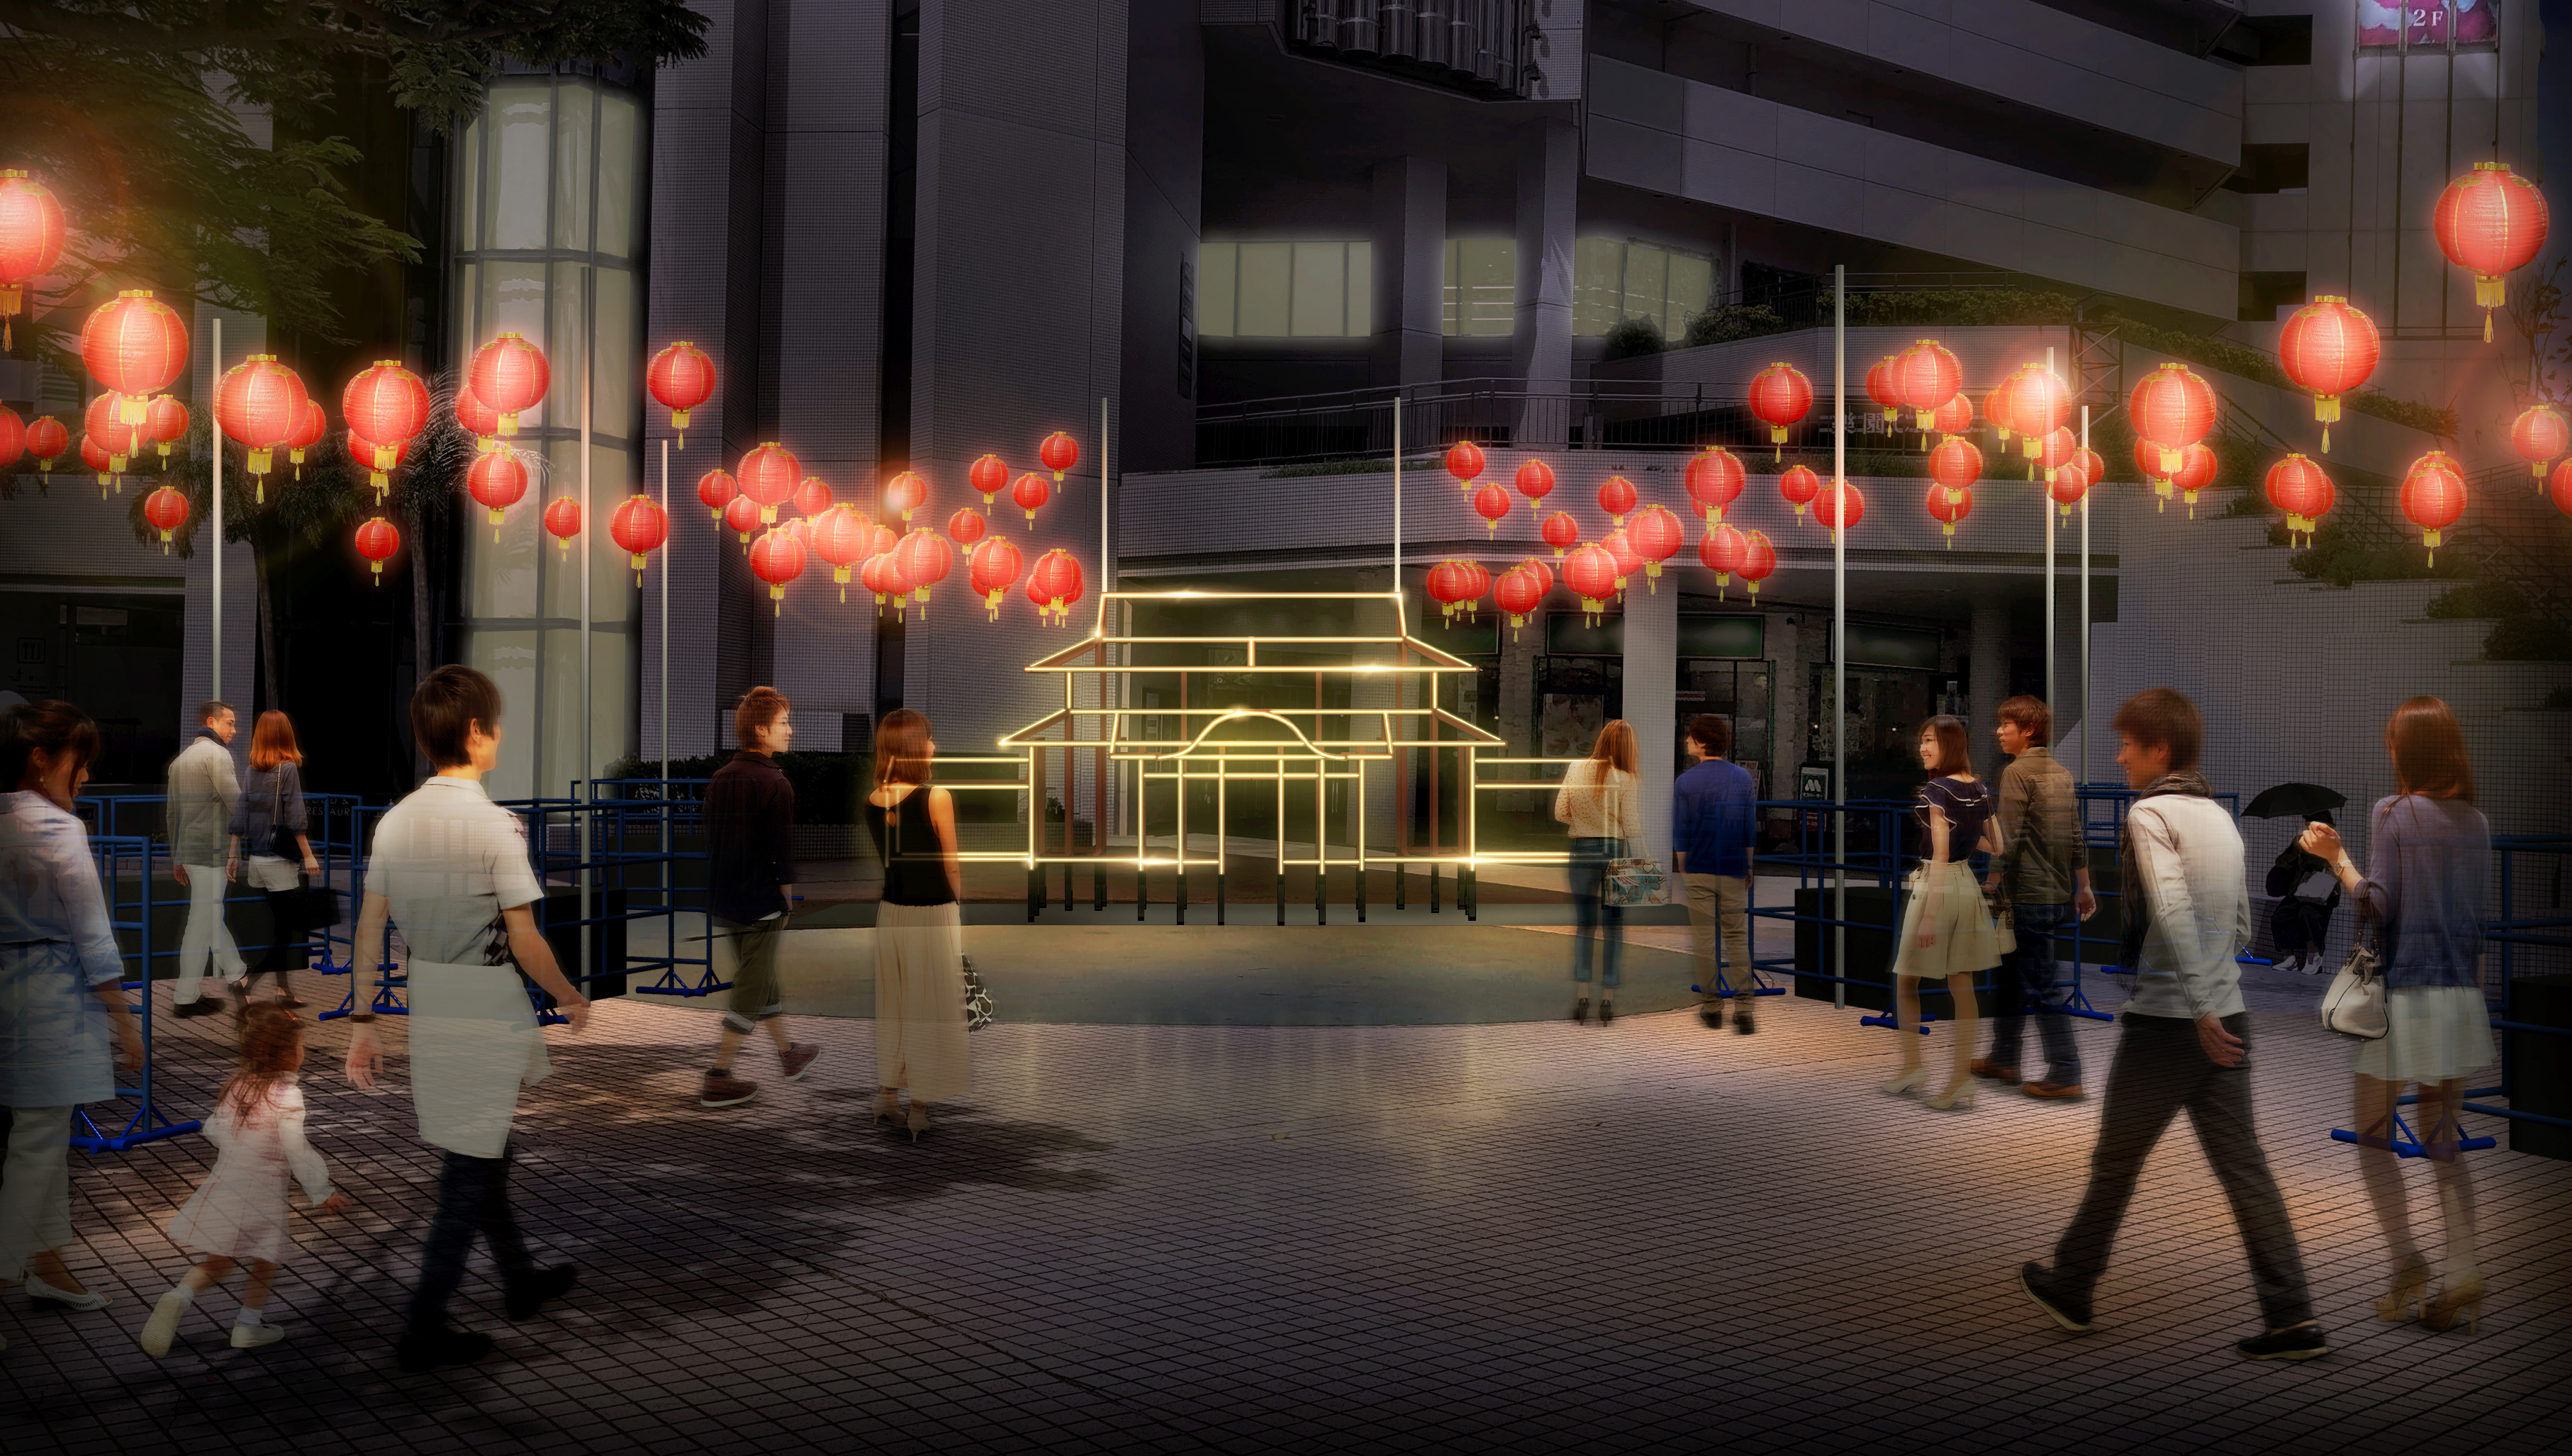 首里城 うむいの燈プロジェクト 発足について 首里城モニュメントのライトアップやランタンウォークなどを開催 オリオンビール株式会社のプレスリリース